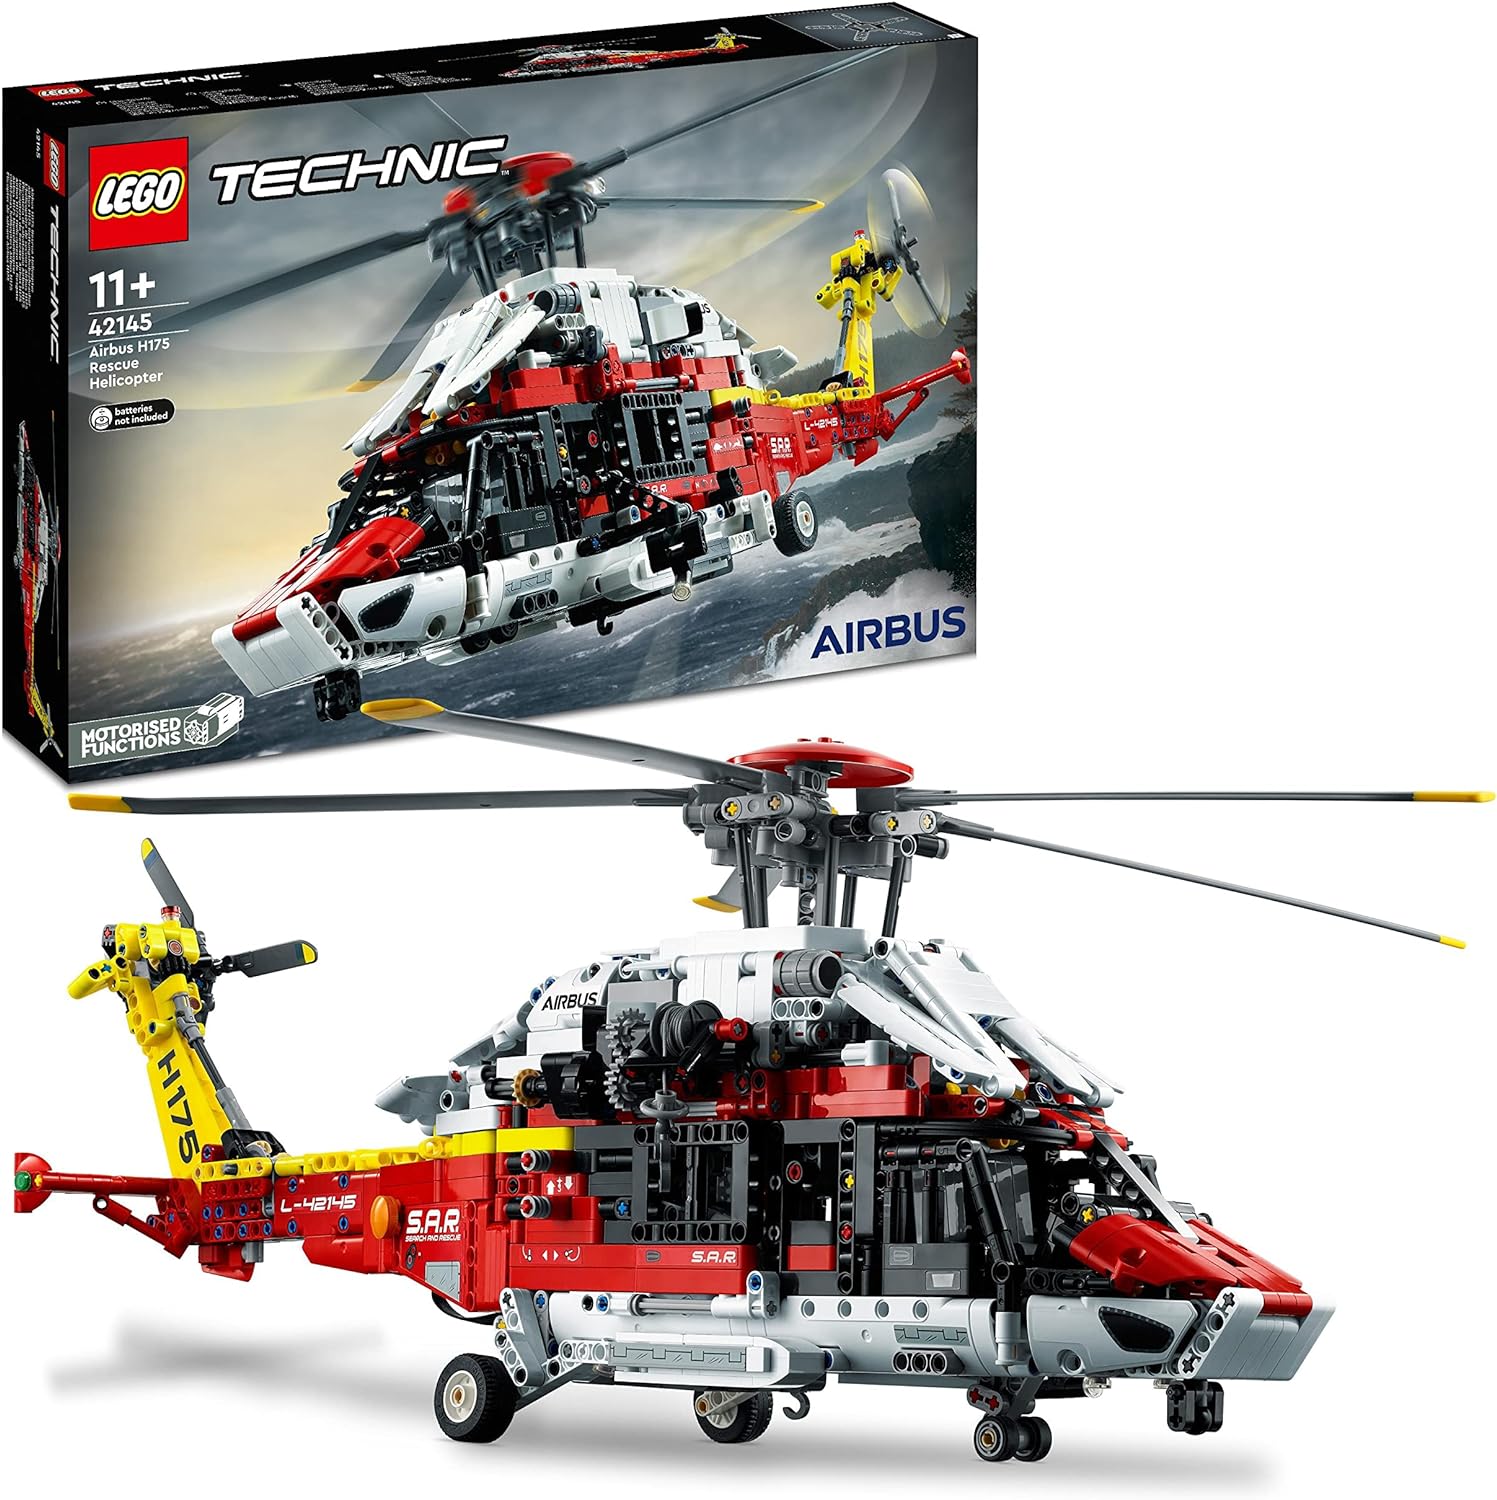 LEGO Technic 42145 Airbus H175 Rettungshubschrauber Modellbausatz Spielzeug Hubschrauber Lernspielzeug LEGO-Technik LEGO-Bausteine LEGO-Sets LEGO-Steine Bausteine Sets Steine